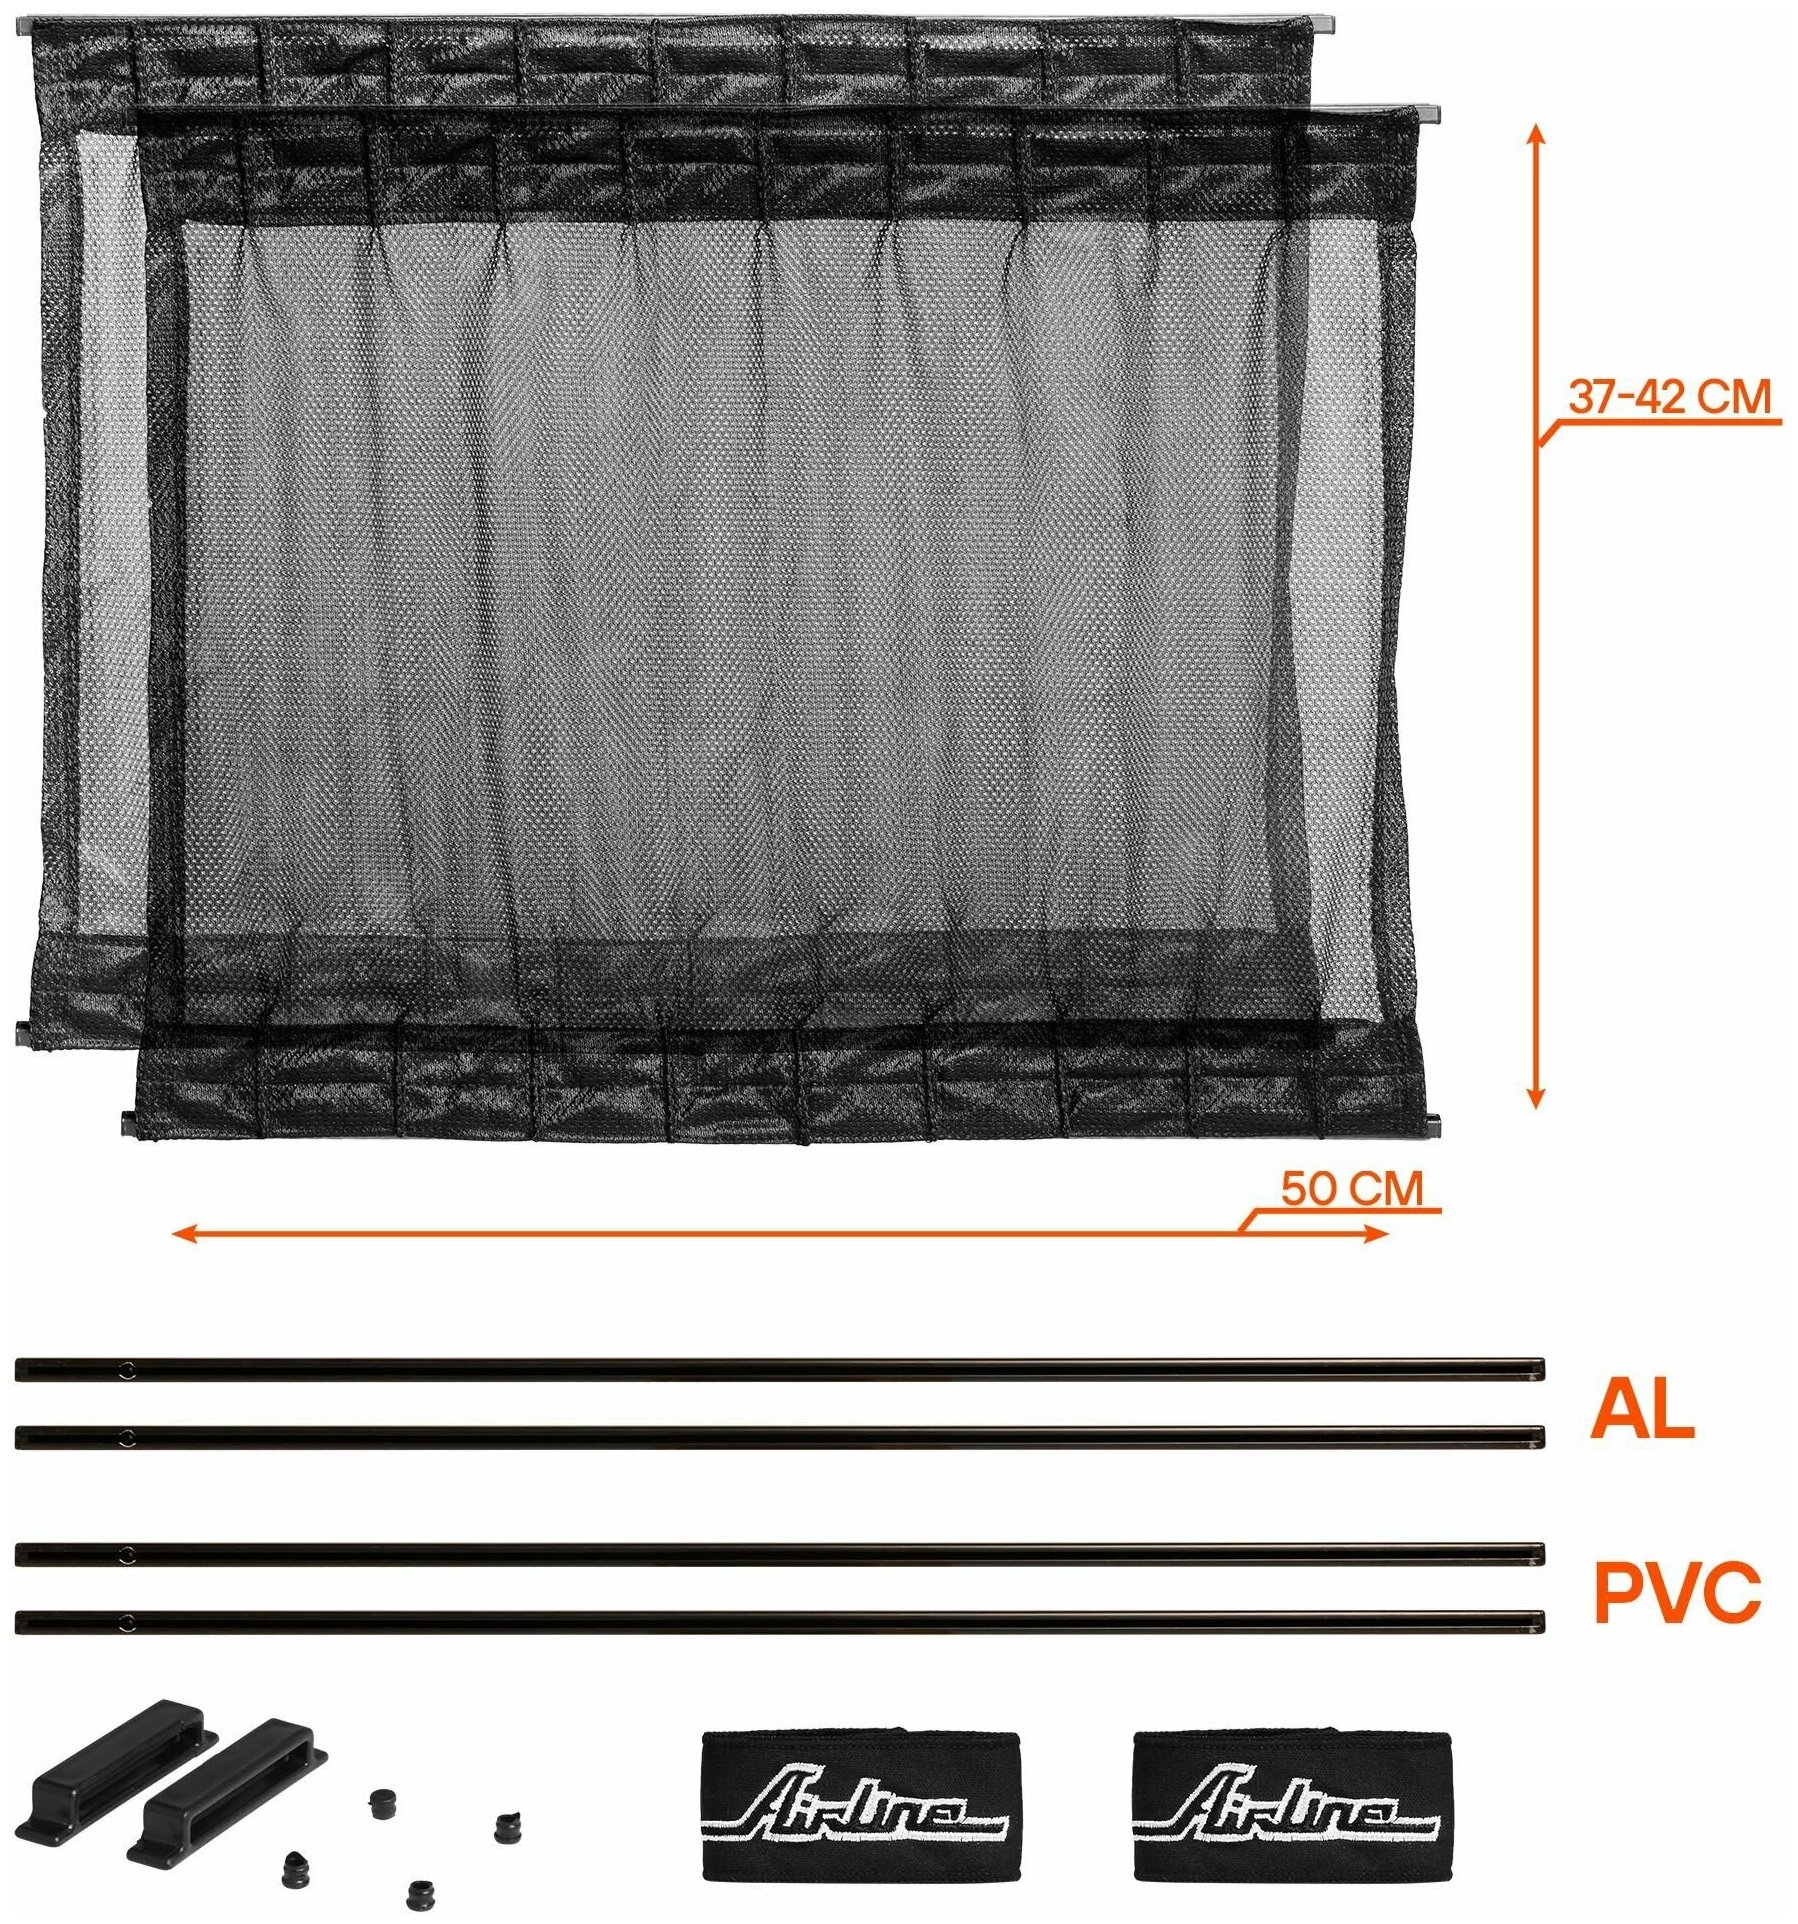 Шторки автомобильные солнцезащитные раздвижные Airline S (ДxВ: 50x37-42 см), цвет черный, - фото №2